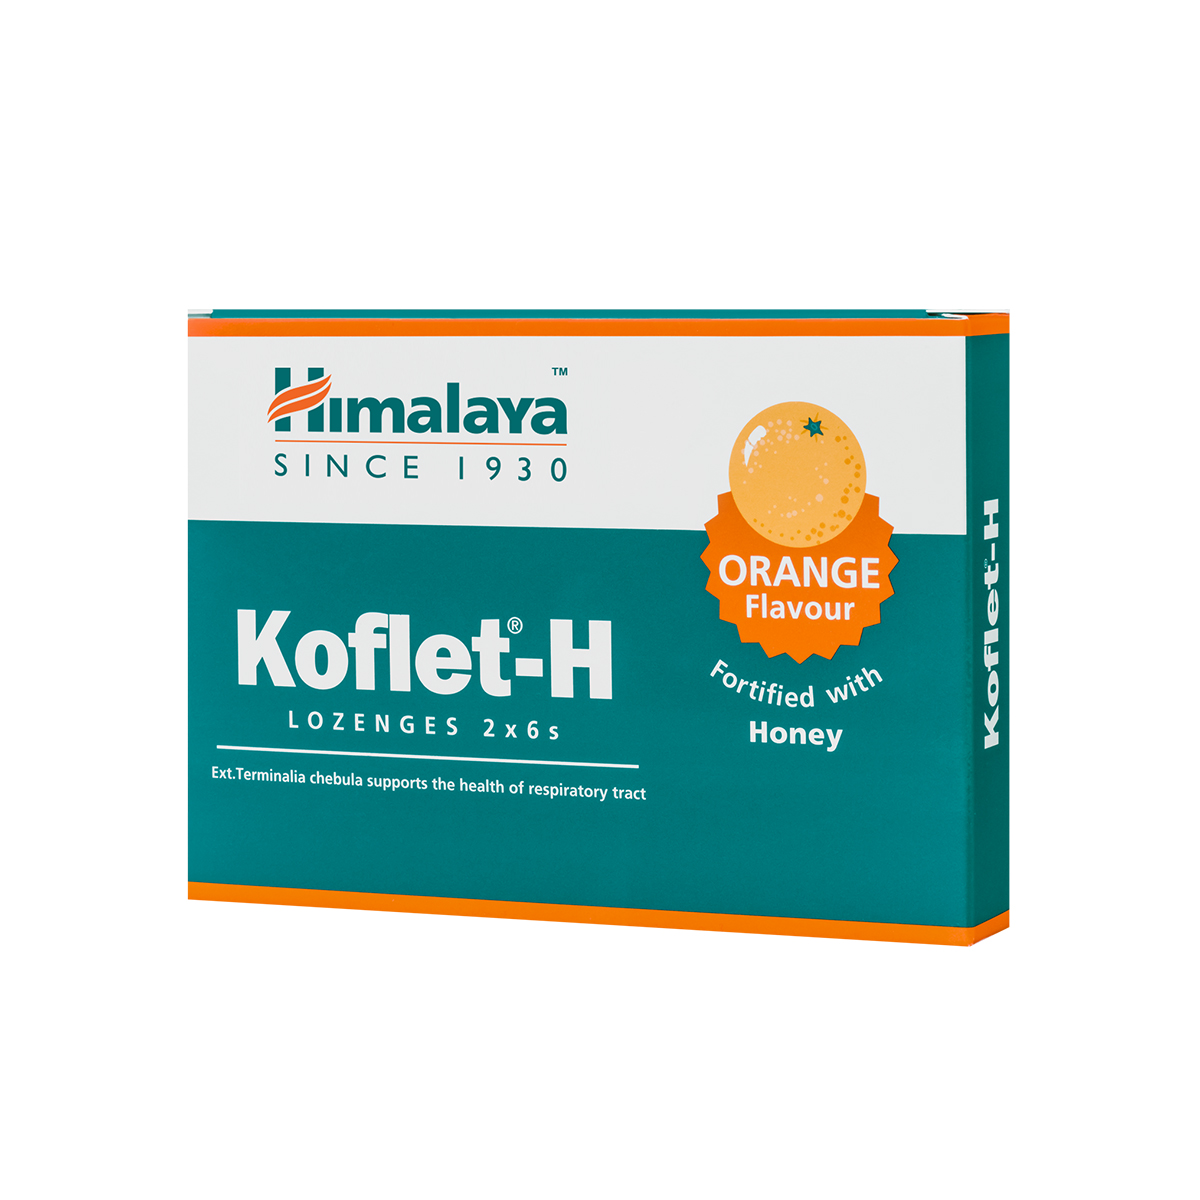 Dureri de gat - Koflet-H cu aromă de portocale, 12 pastile, Himalaya, sinapis.ro